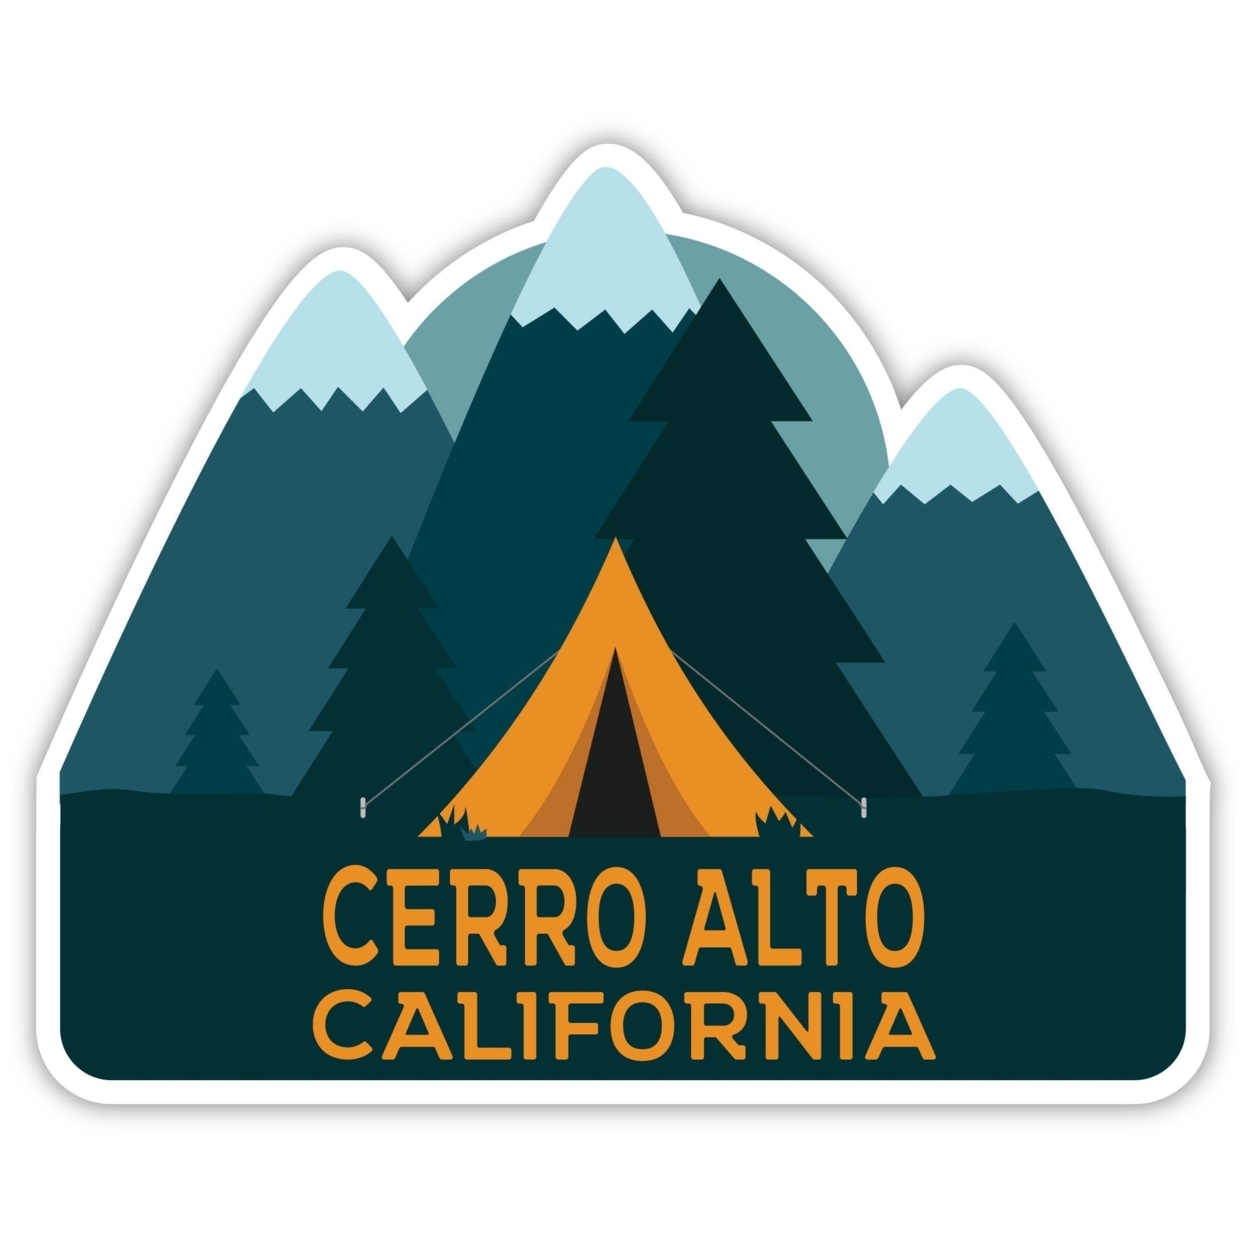 Cerro Alto California Souvenir Decorative Stickers (Choose Theme And Size) - 4-Pack, 10-Inch, Tent